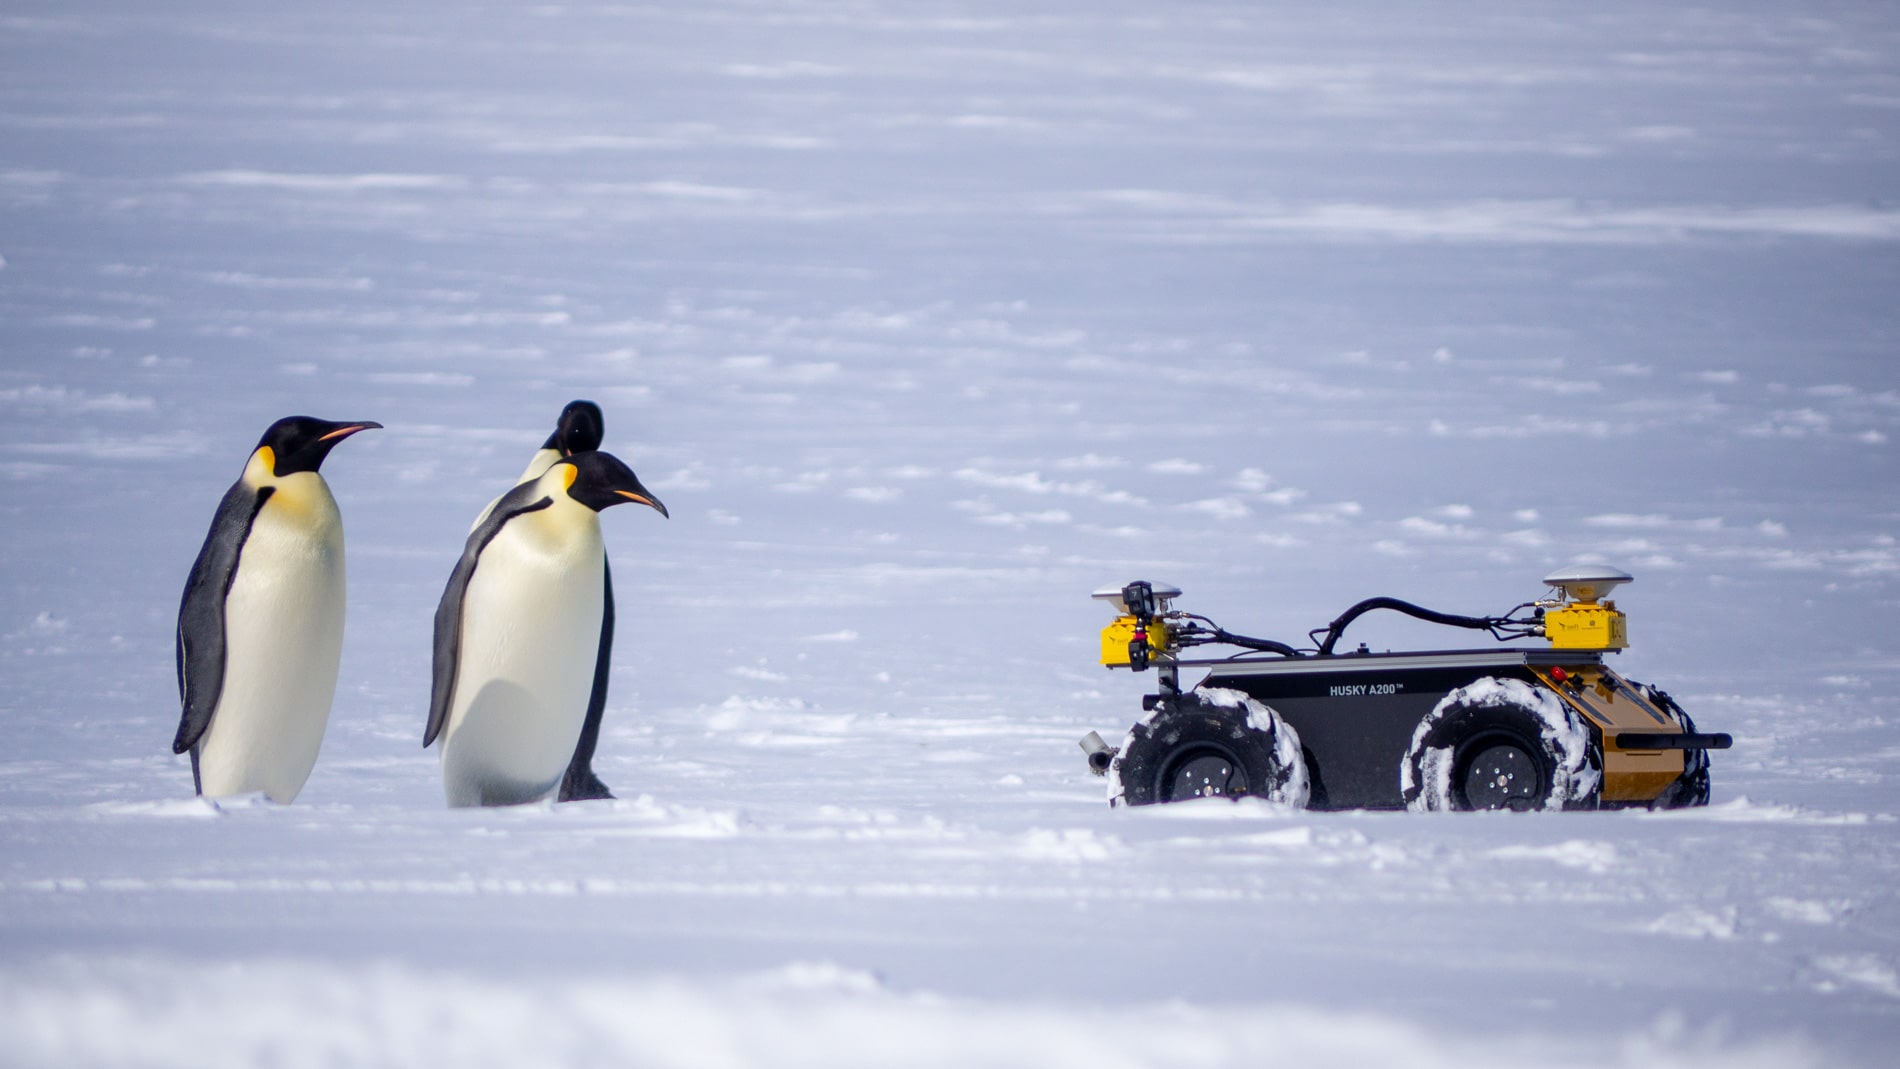 Додали цю новину у дайджест зокрема через ці неймовірні фото пінгвінів разом з роботом. Більше за посиланням! Clearpath Robotics